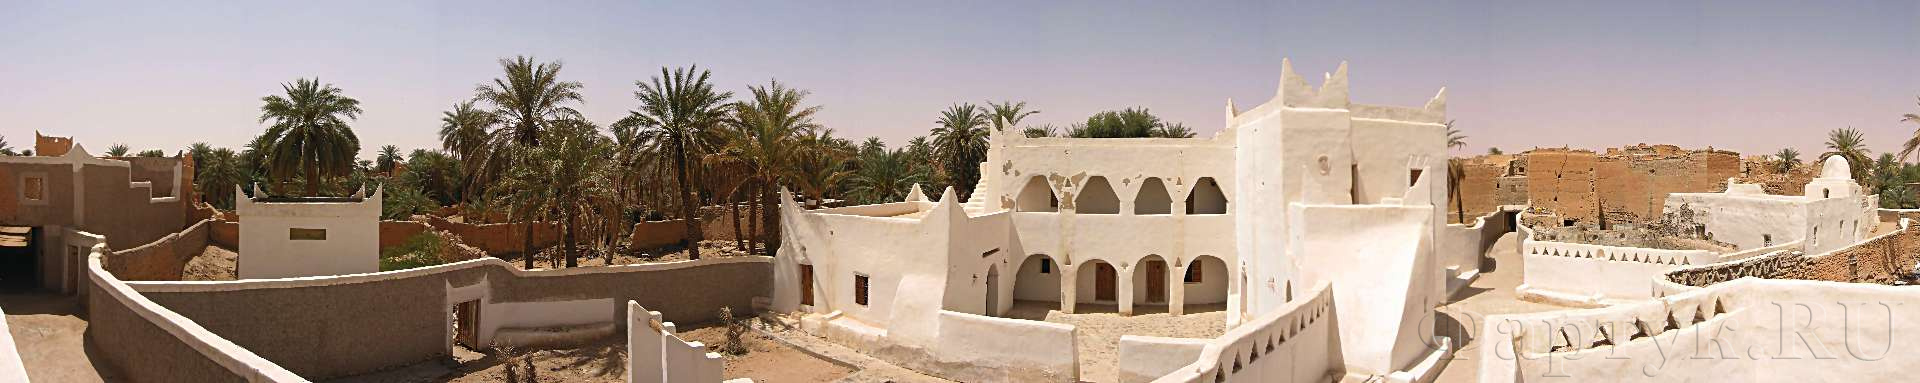 Панорамный вид на крышах Гадамес, оазис в Ливии